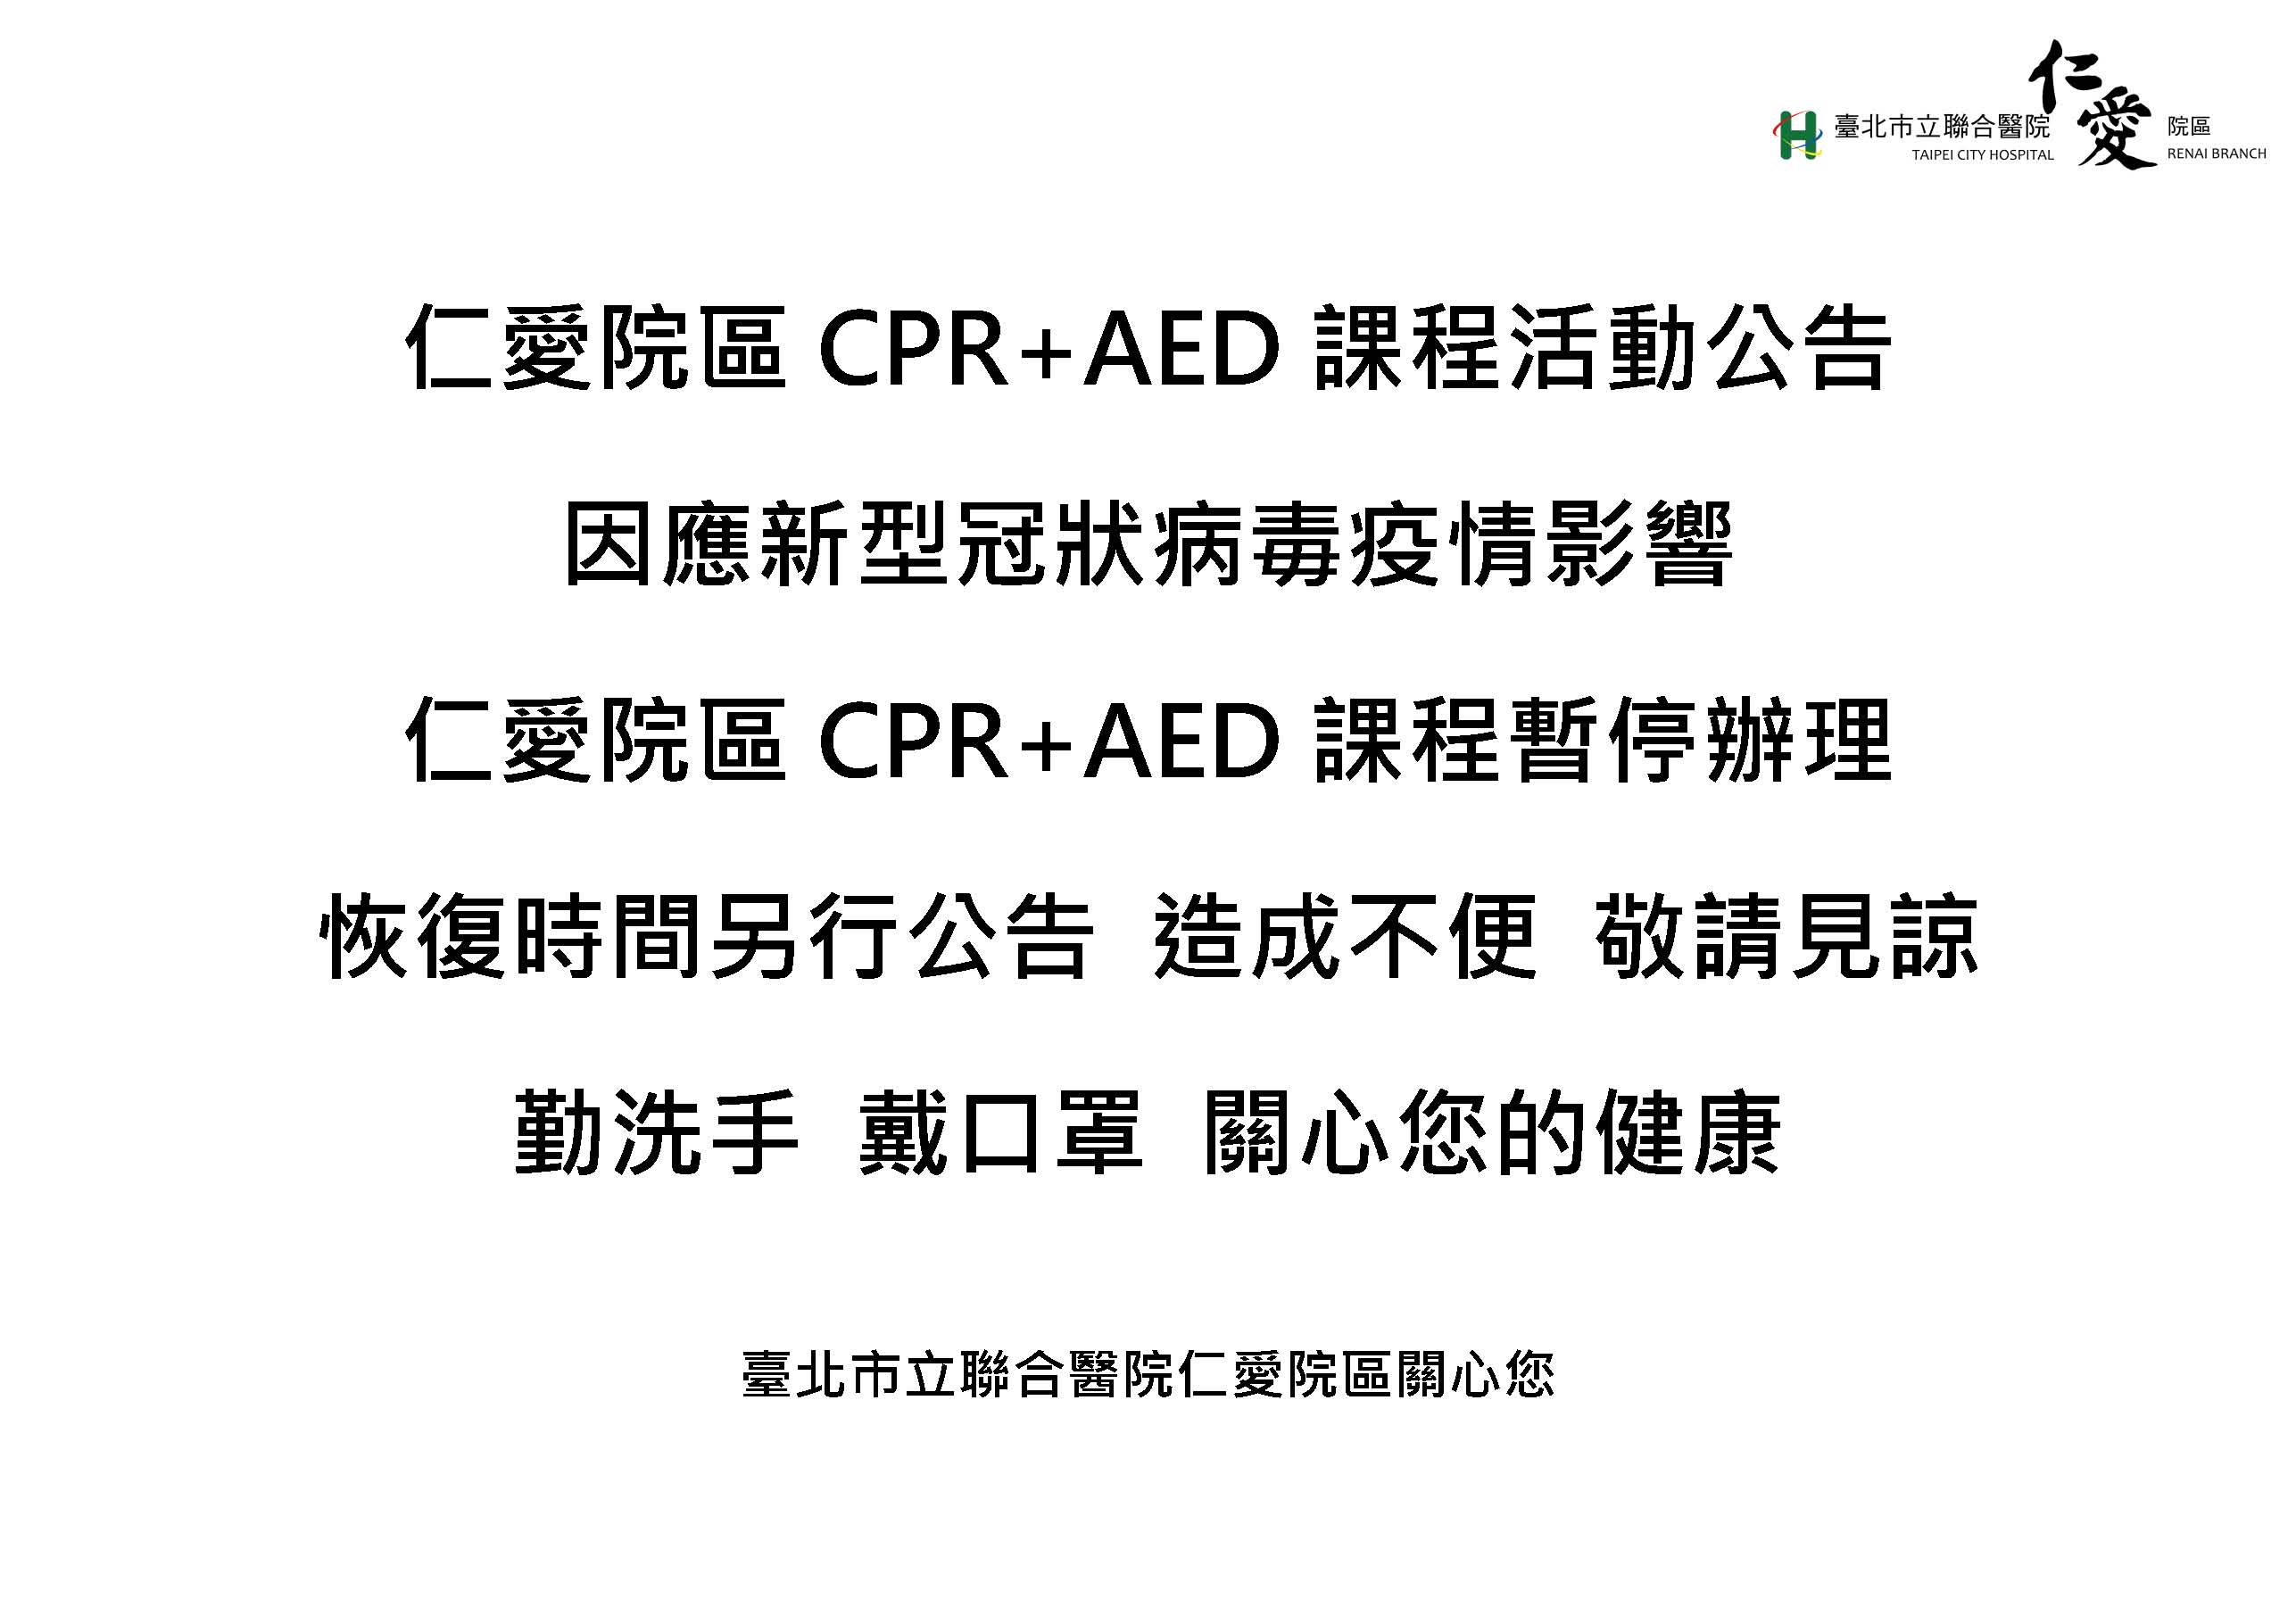 仁愛院區CPR+AED課程活動暫停公告